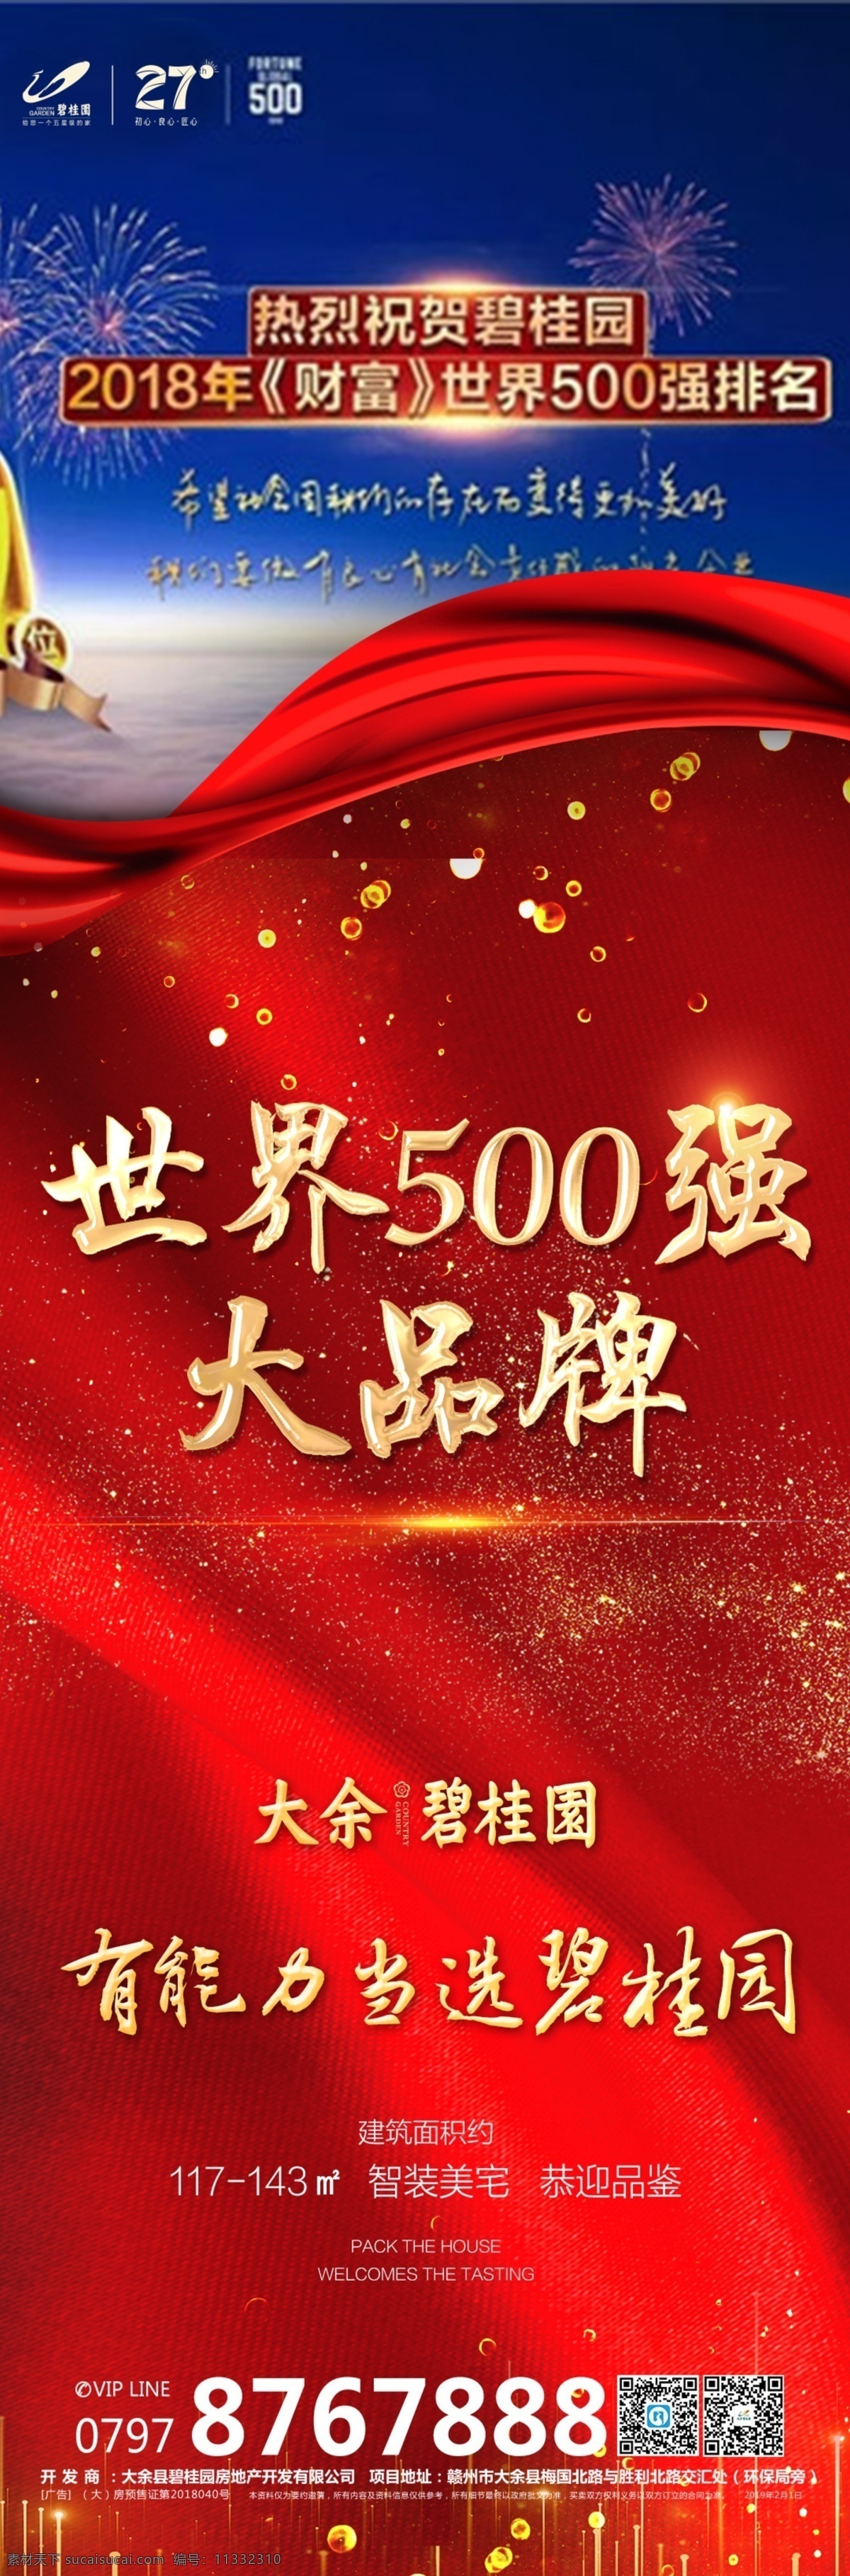 碧桂园 微信 海报图片 红色 地产 大品牌 世界500强 微推 高档 大气 九宫格